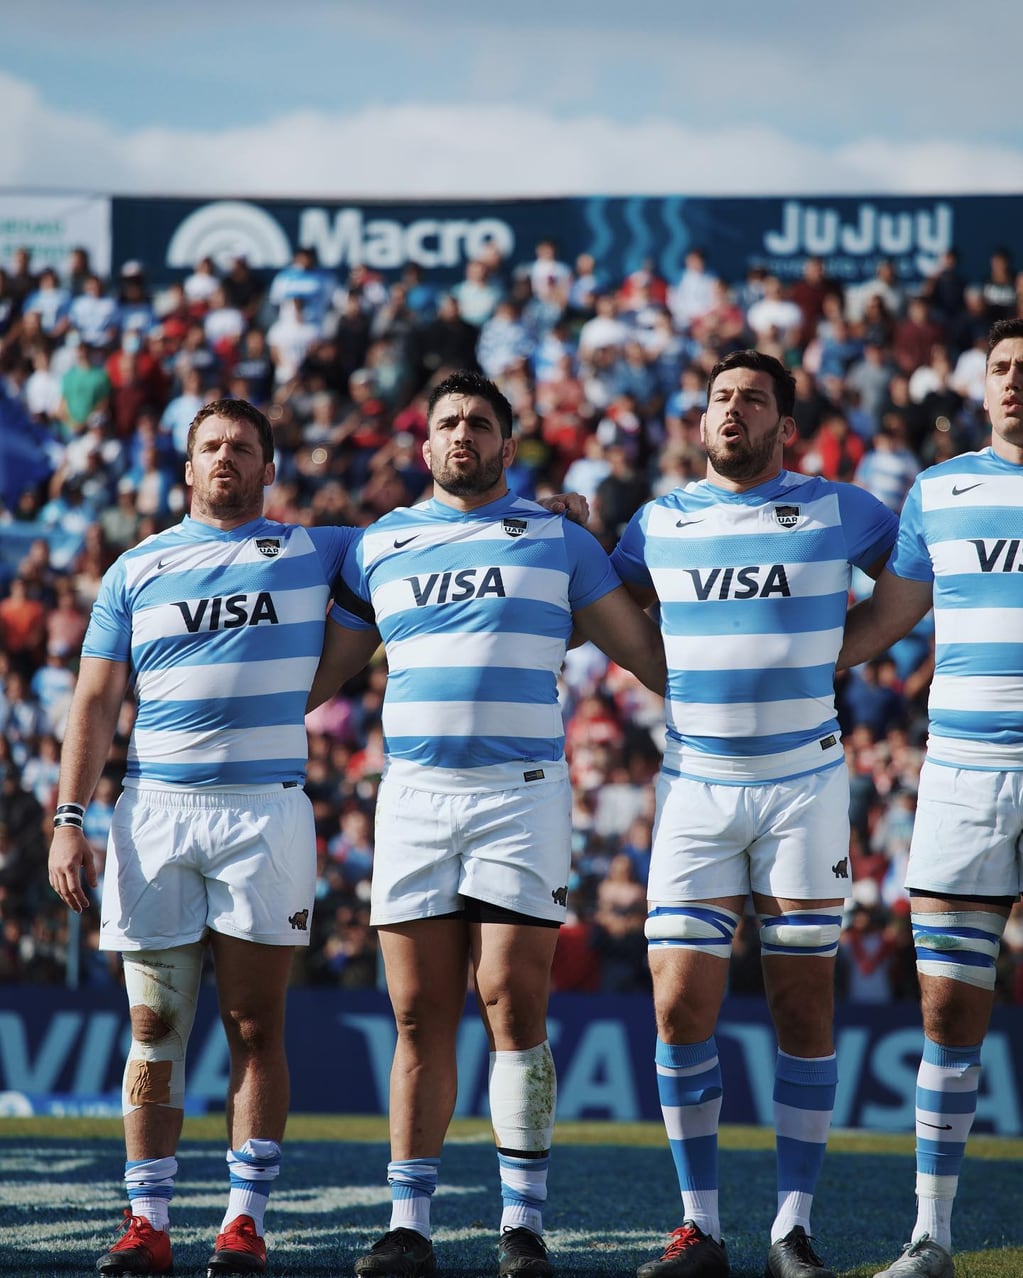 El primer test match de Los Pumas ante Escocia se disputó en Jujuy y fue victoria para el seleccionado argentino, que se adjudicó así la primera Copa "Visa Banco Macro".